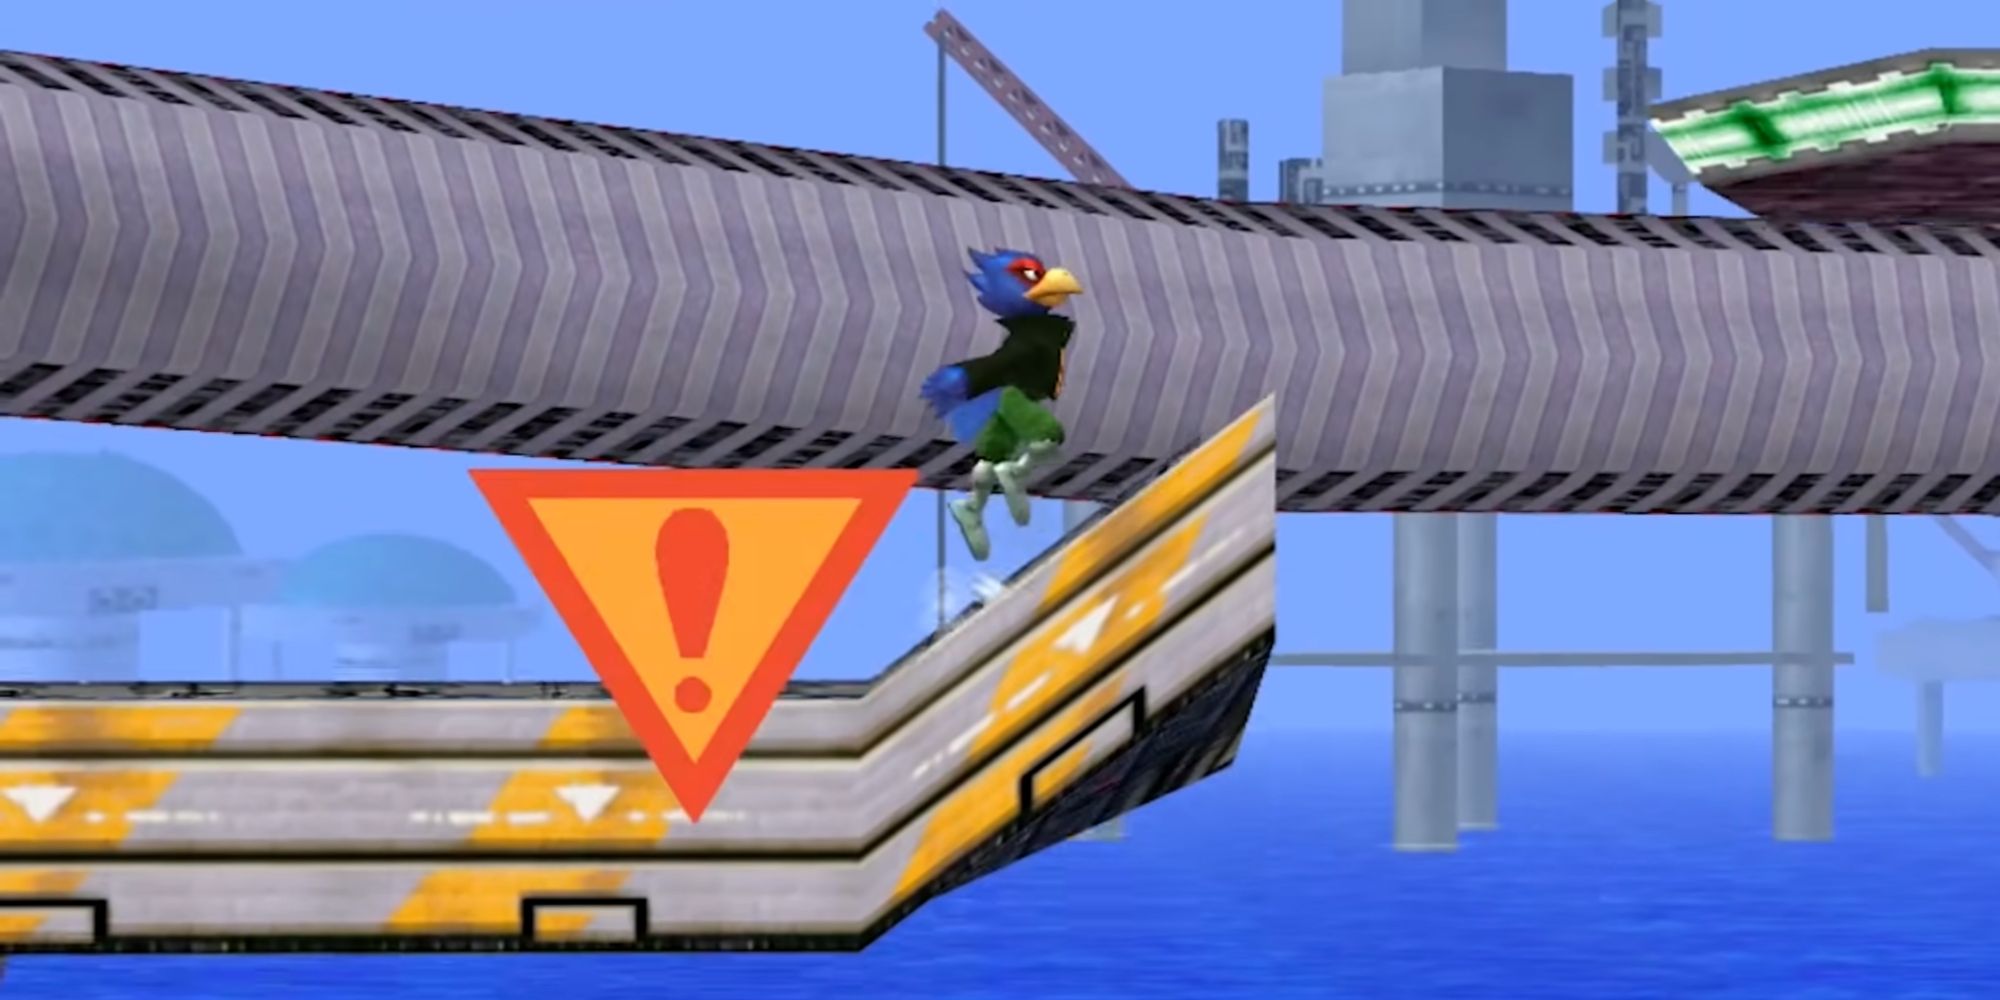 Falco leaps above the track in the F-Zero Grand Prix stage of Super Smash Bros. Melee